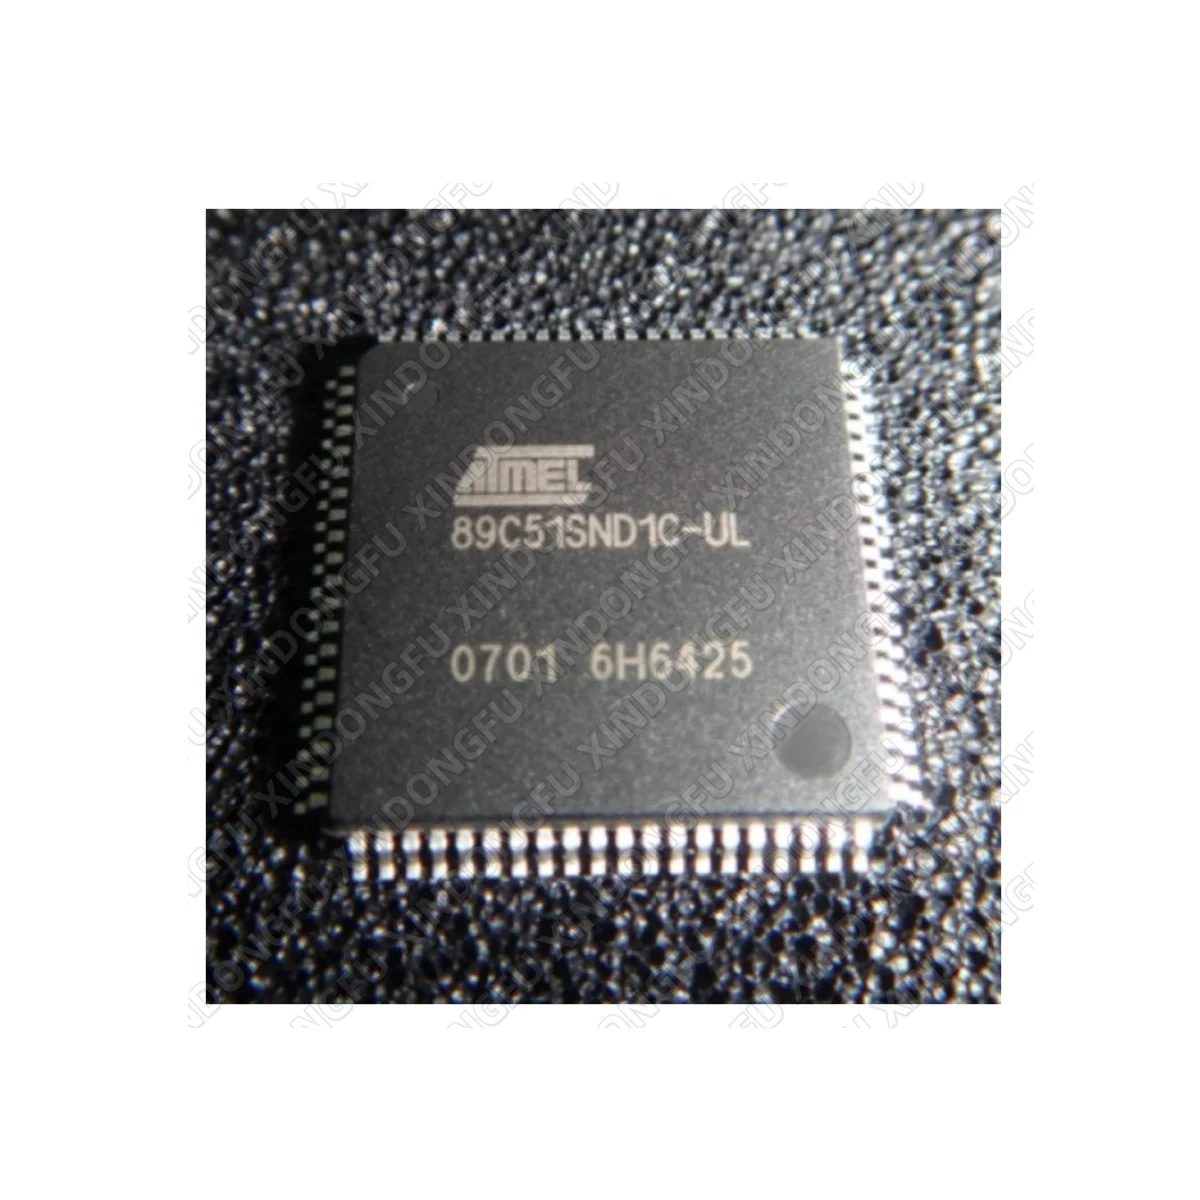 Uus originaal IC chip ATM89C51SND1C-UL ATM89C51SND1C Küsi hinda enne ostu(Küsige hind enne ostmist)